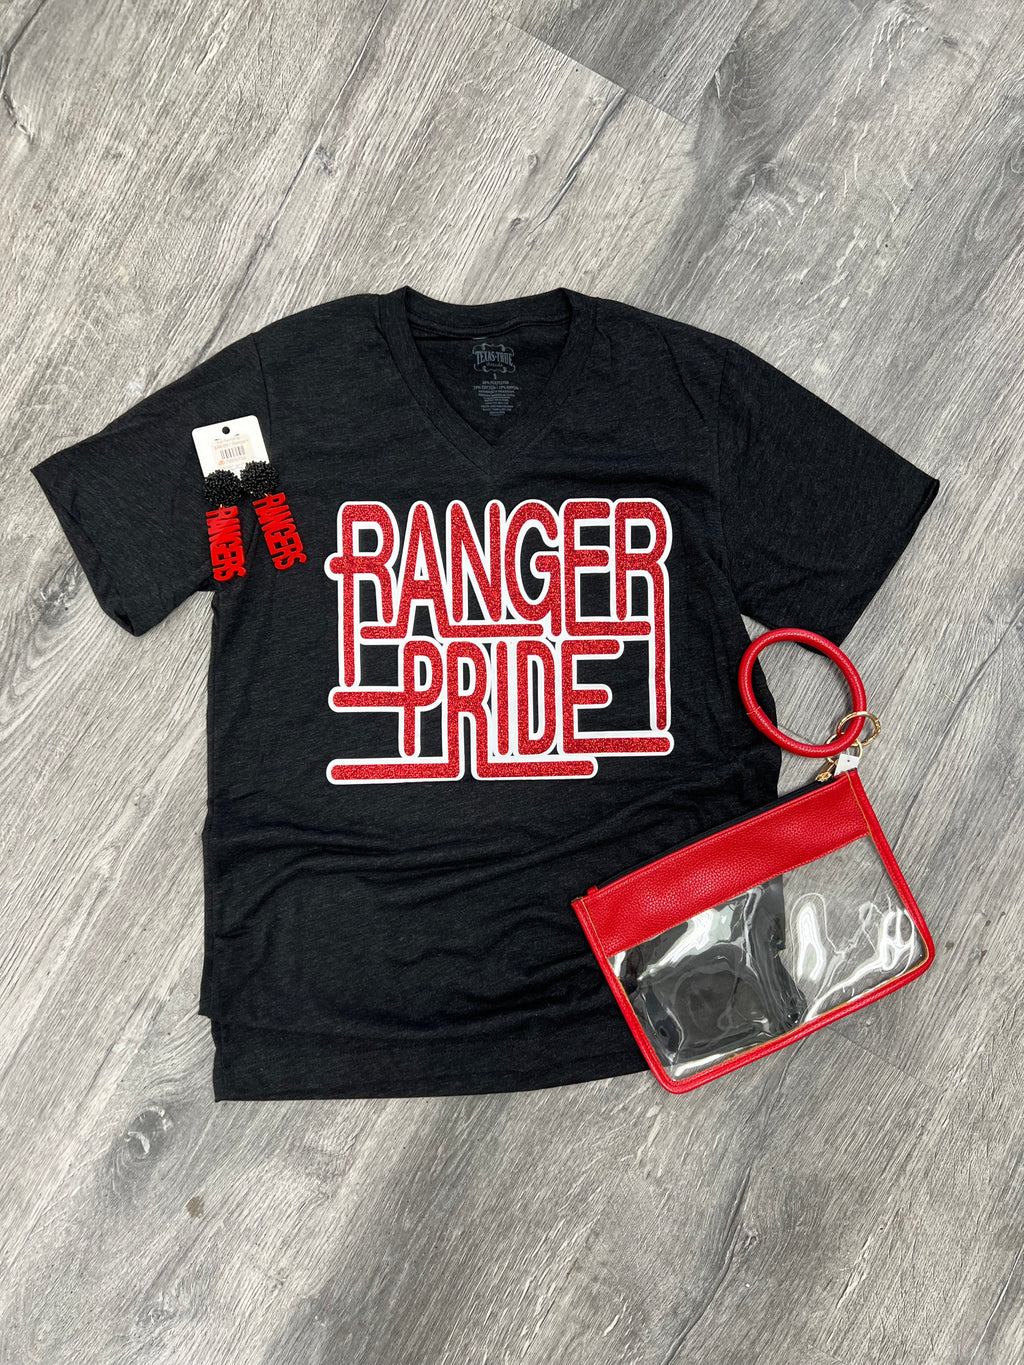 Ranger Pride V-Neck Graphic Tee